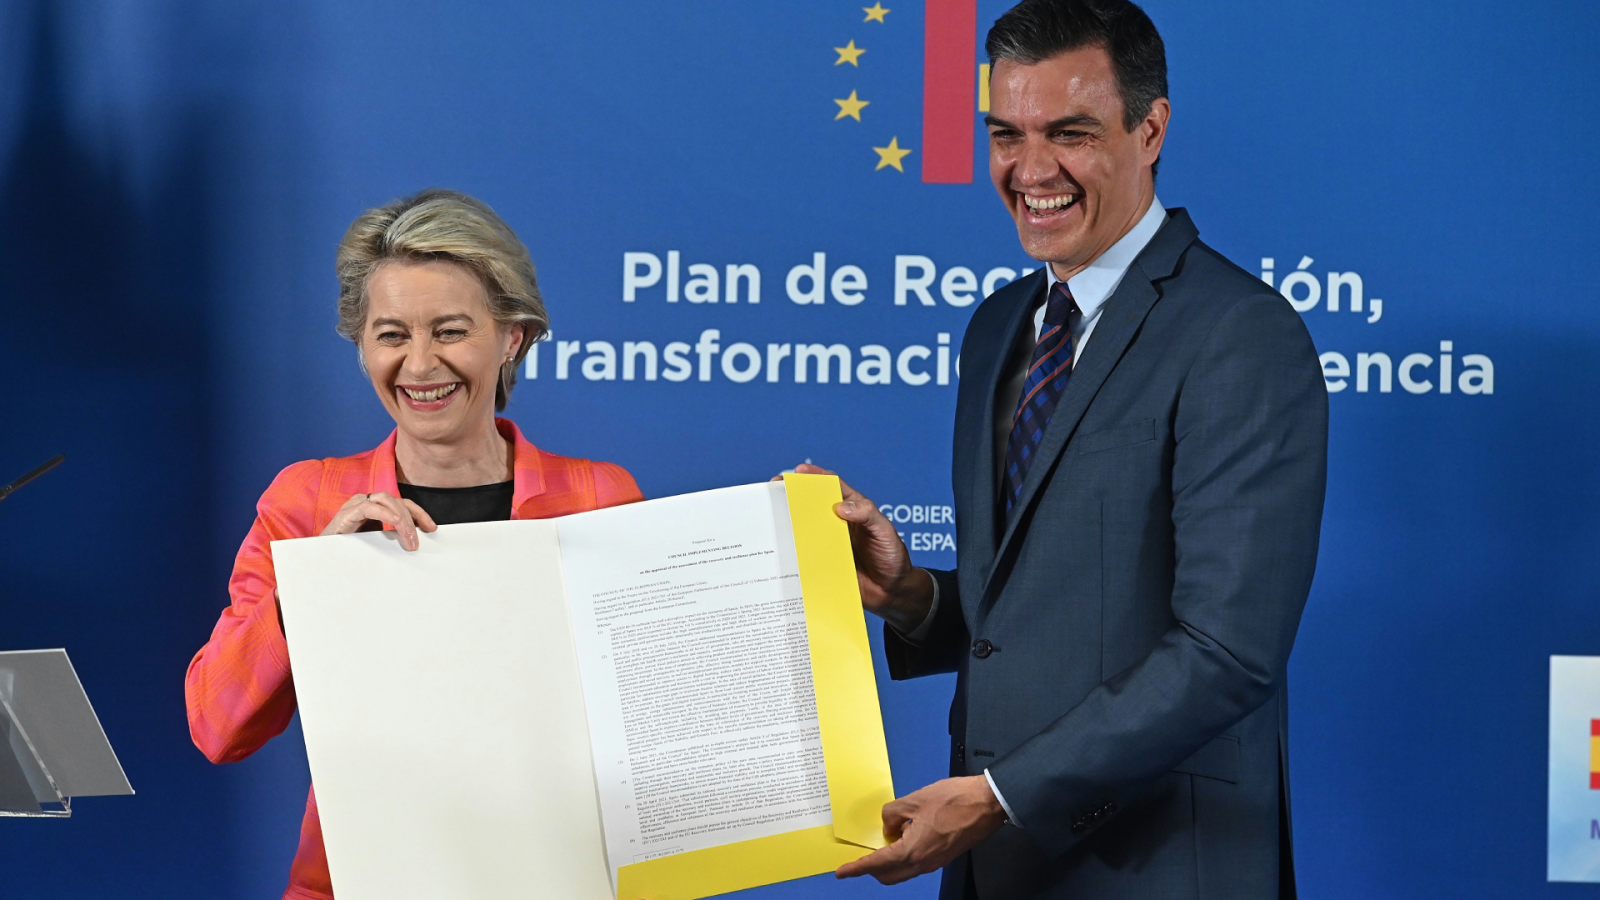 24 horas - Las claves del plan de recuperación español aprobado por la UE - Escuchar ahora